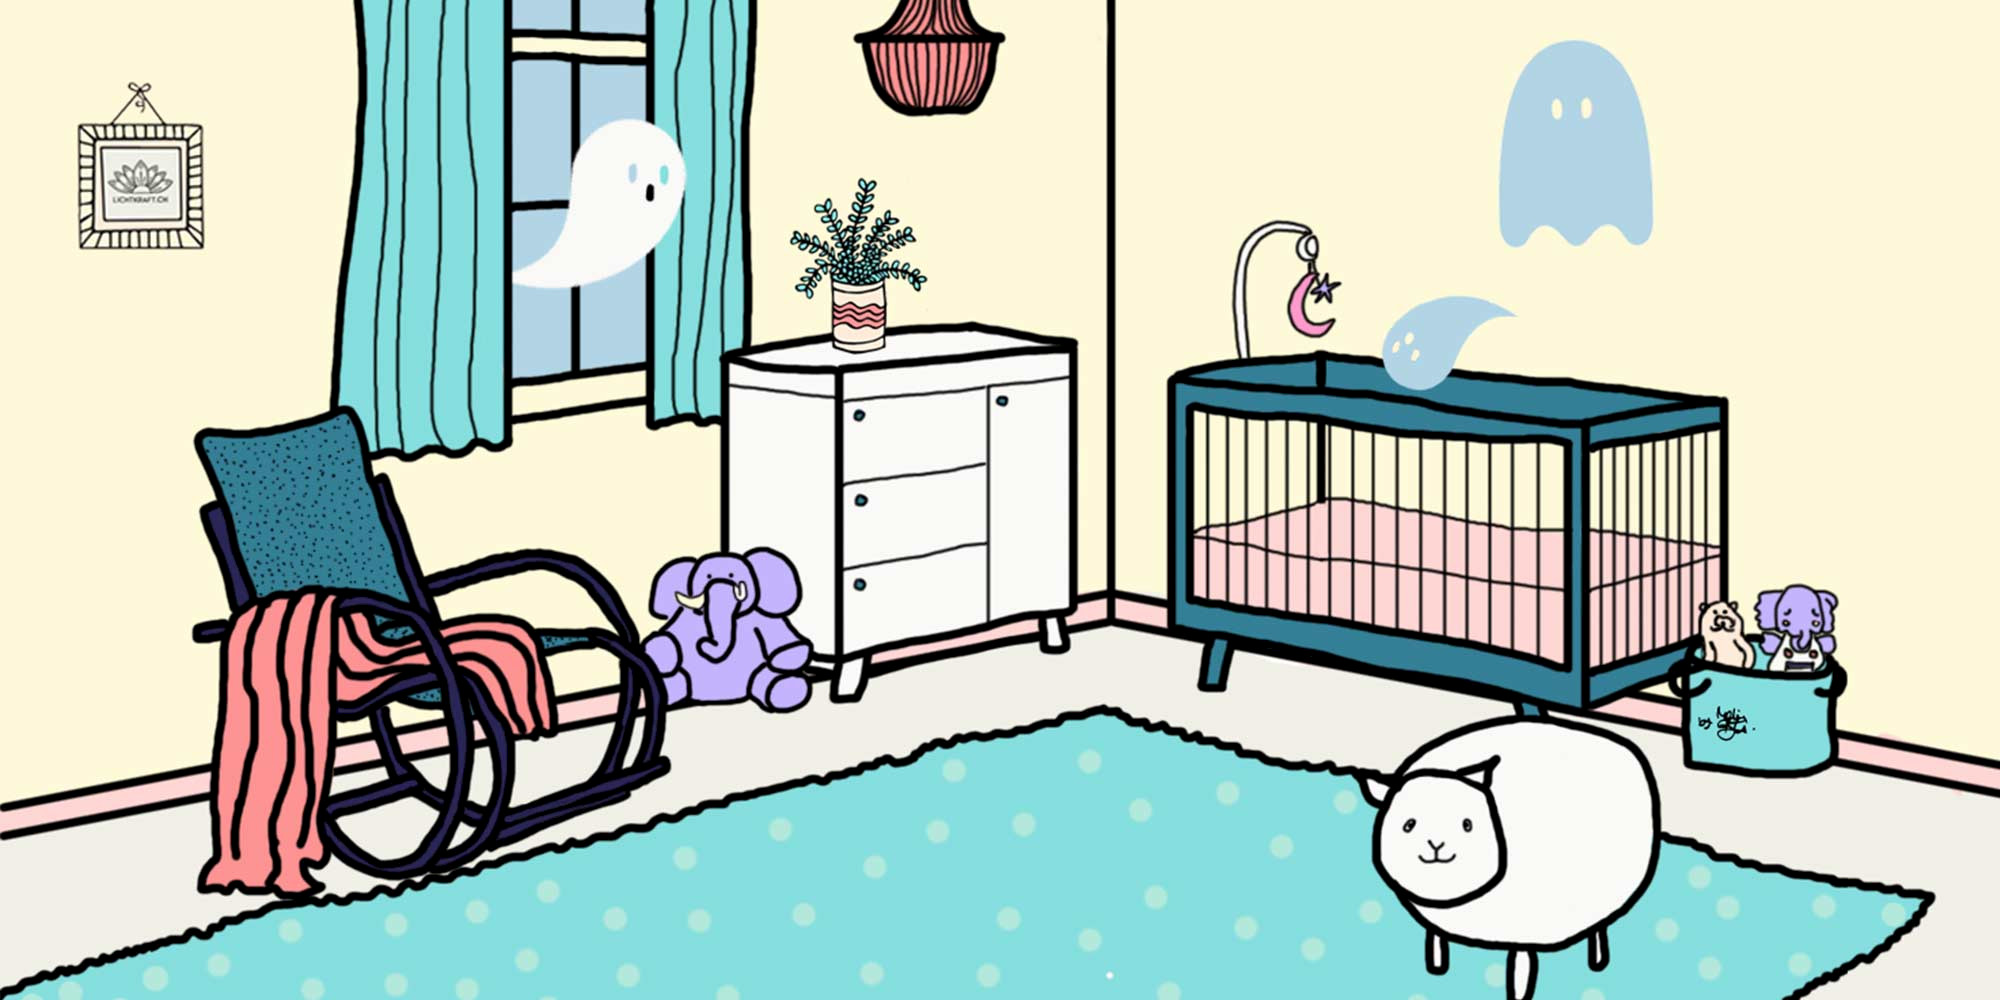 Illustration eines Kinderzimmers in dem kleine Geistwesen zu sehen sind.